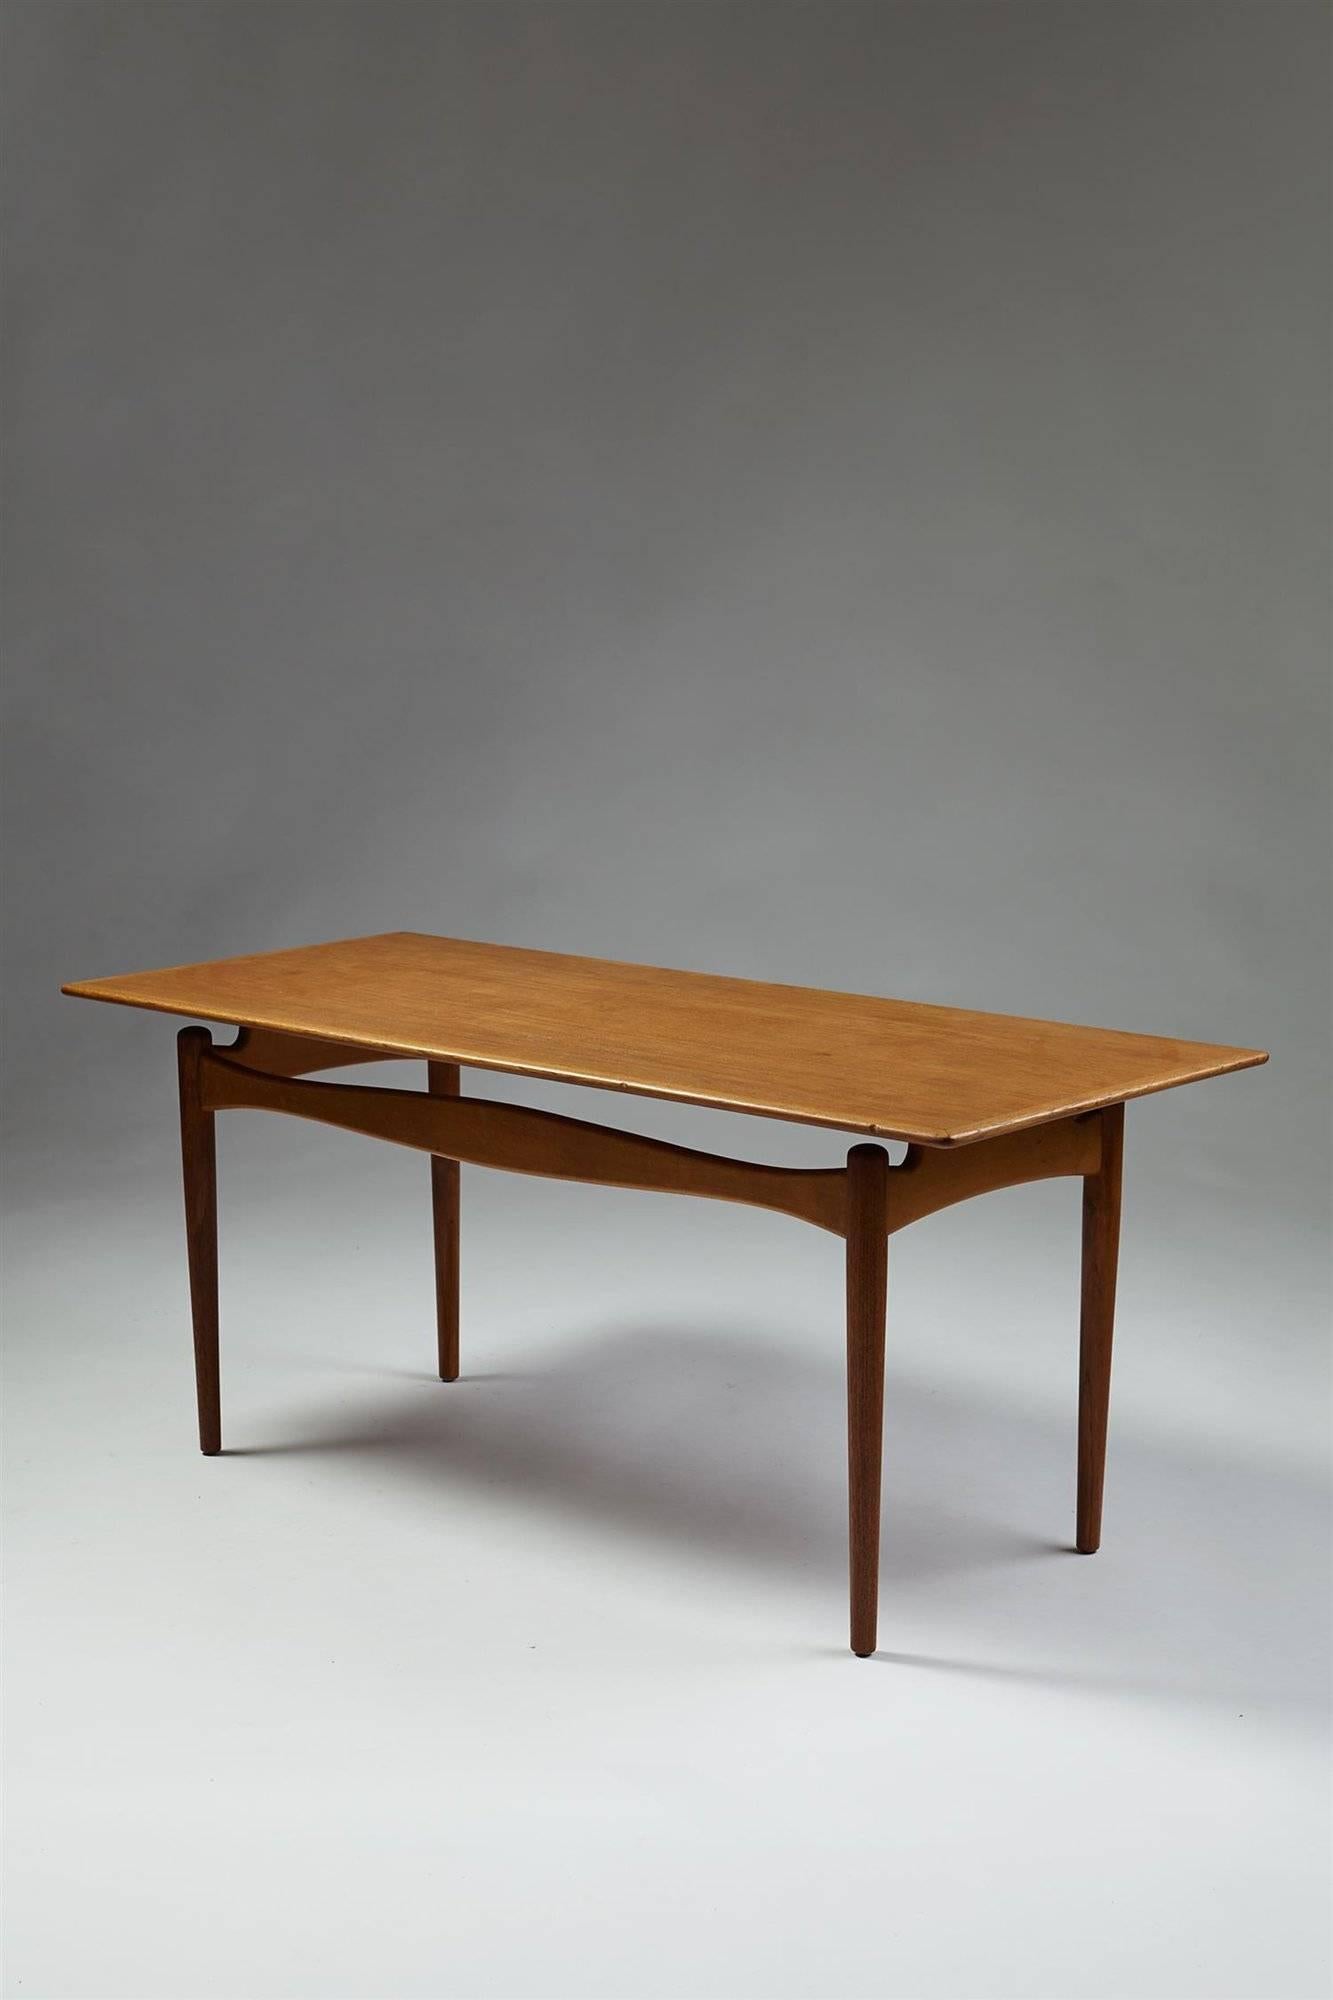 Occasional table designed by Finn Juhl for Bovirke,
Denmark, 1950s.

Teak and beech.